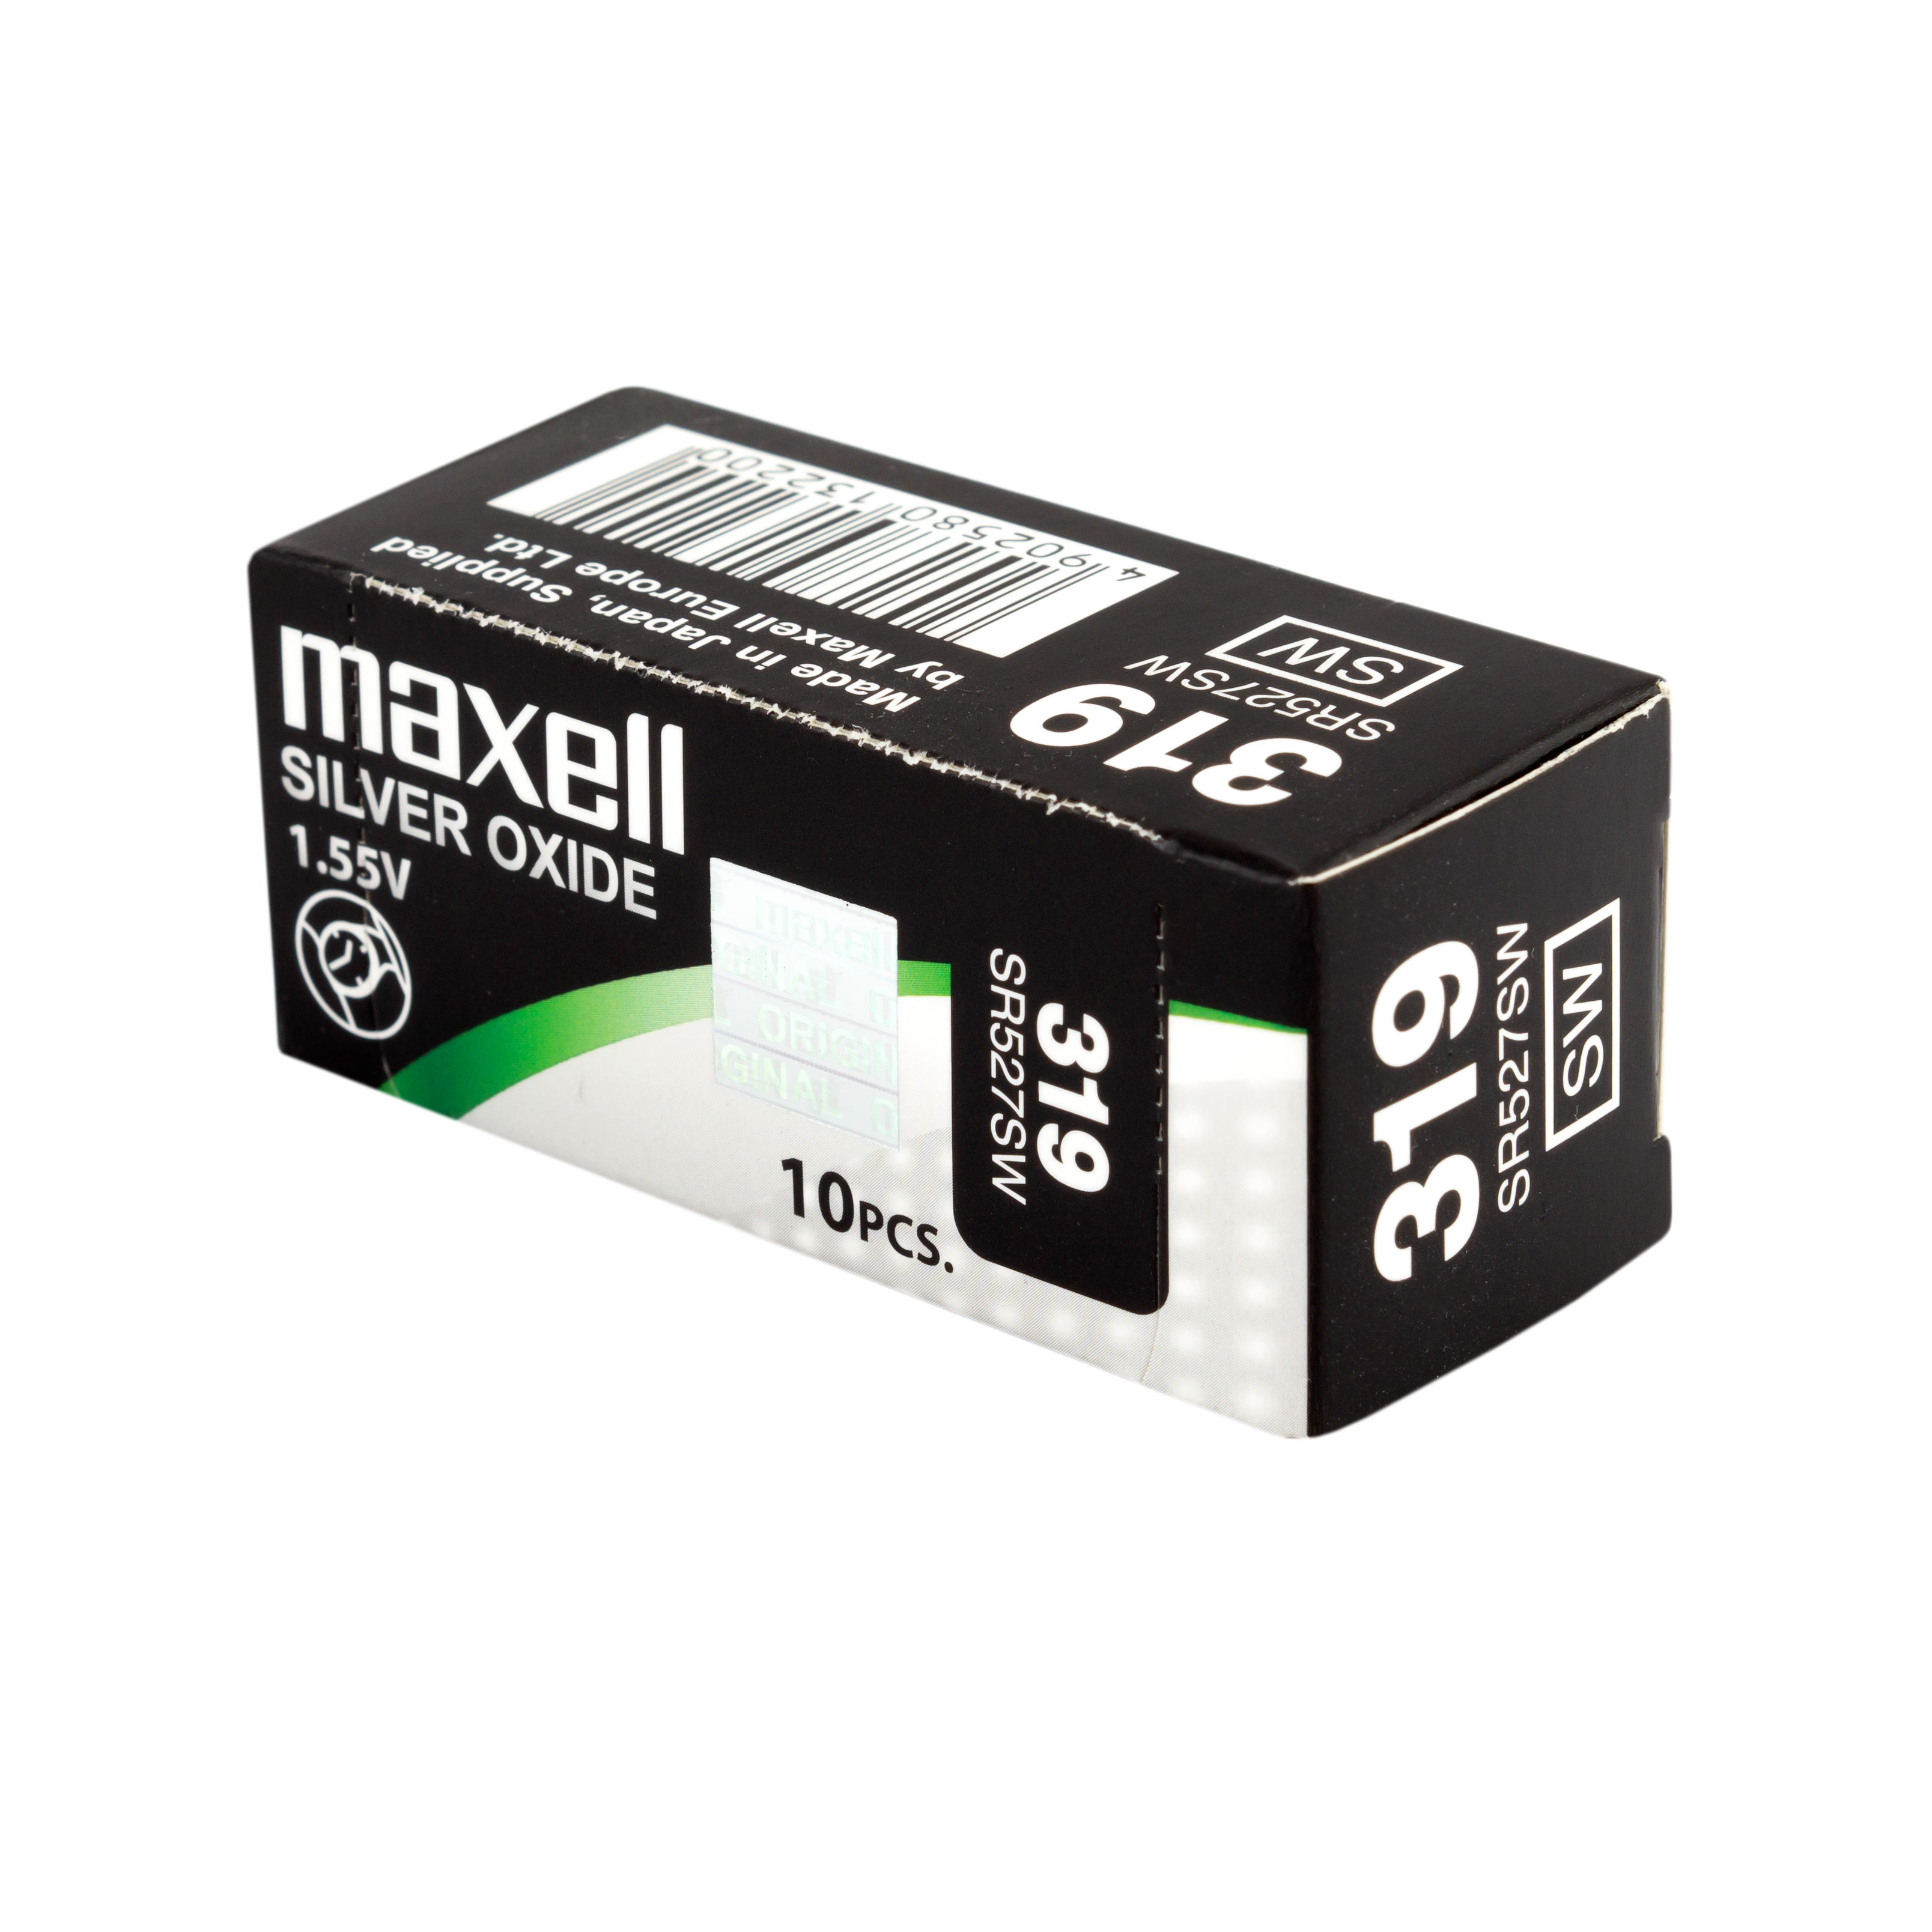 2 x Maxell 319 Uhrenbatterie 1,55 V SR527SW SR64 RW 328 Knopfzelle 17mAh 